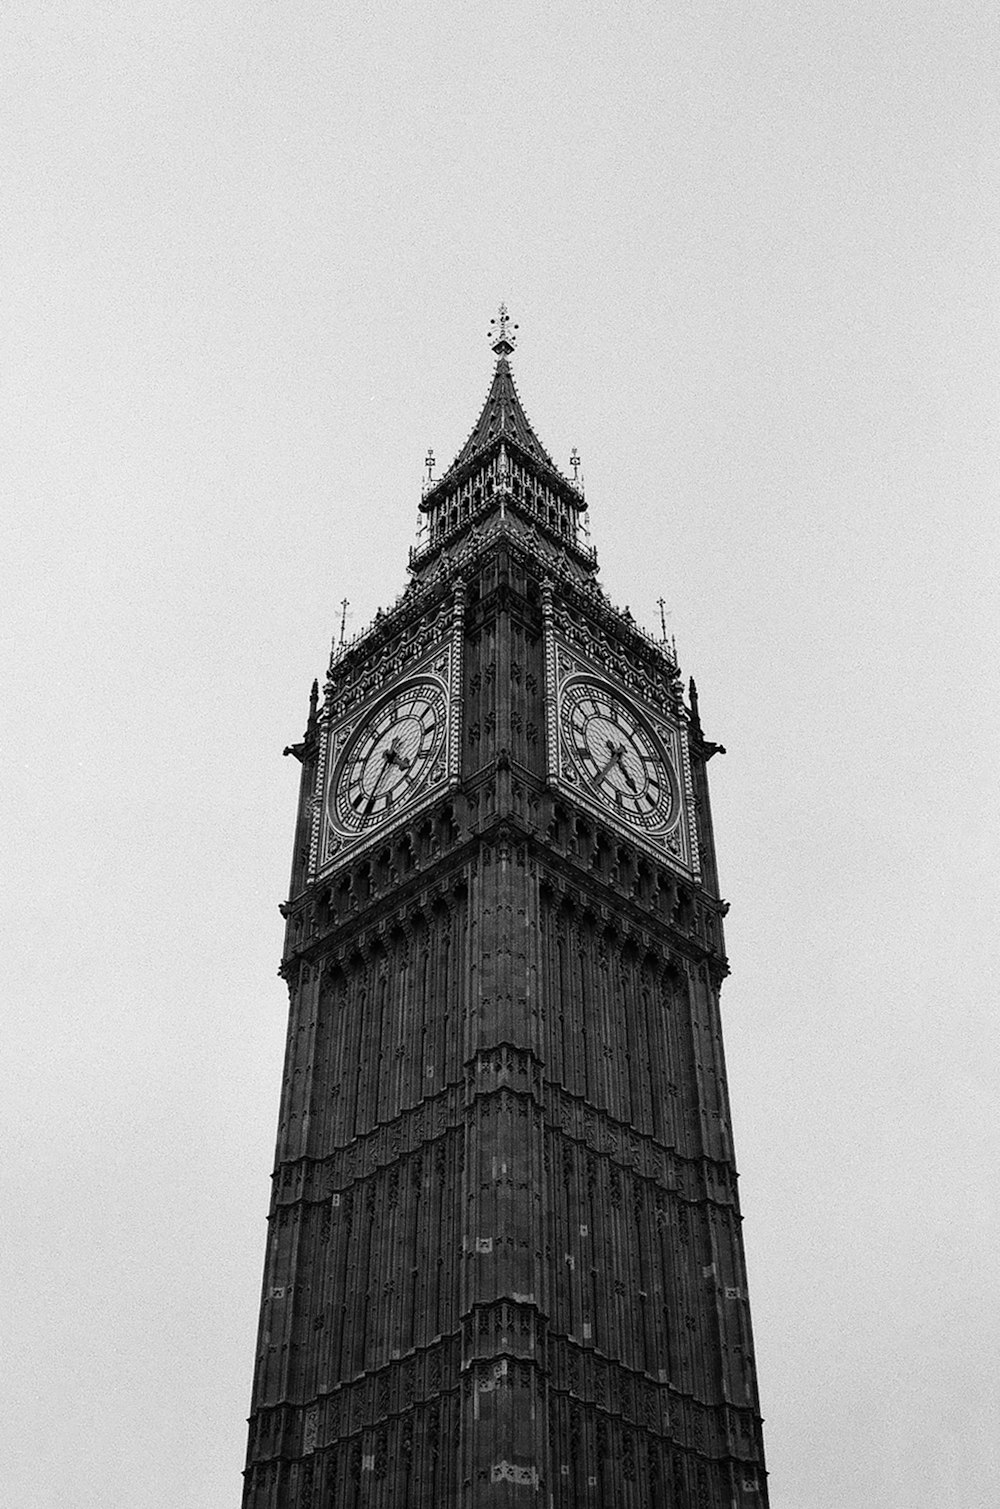 Uma foto em preto e branco da torre do relógio Big Ben